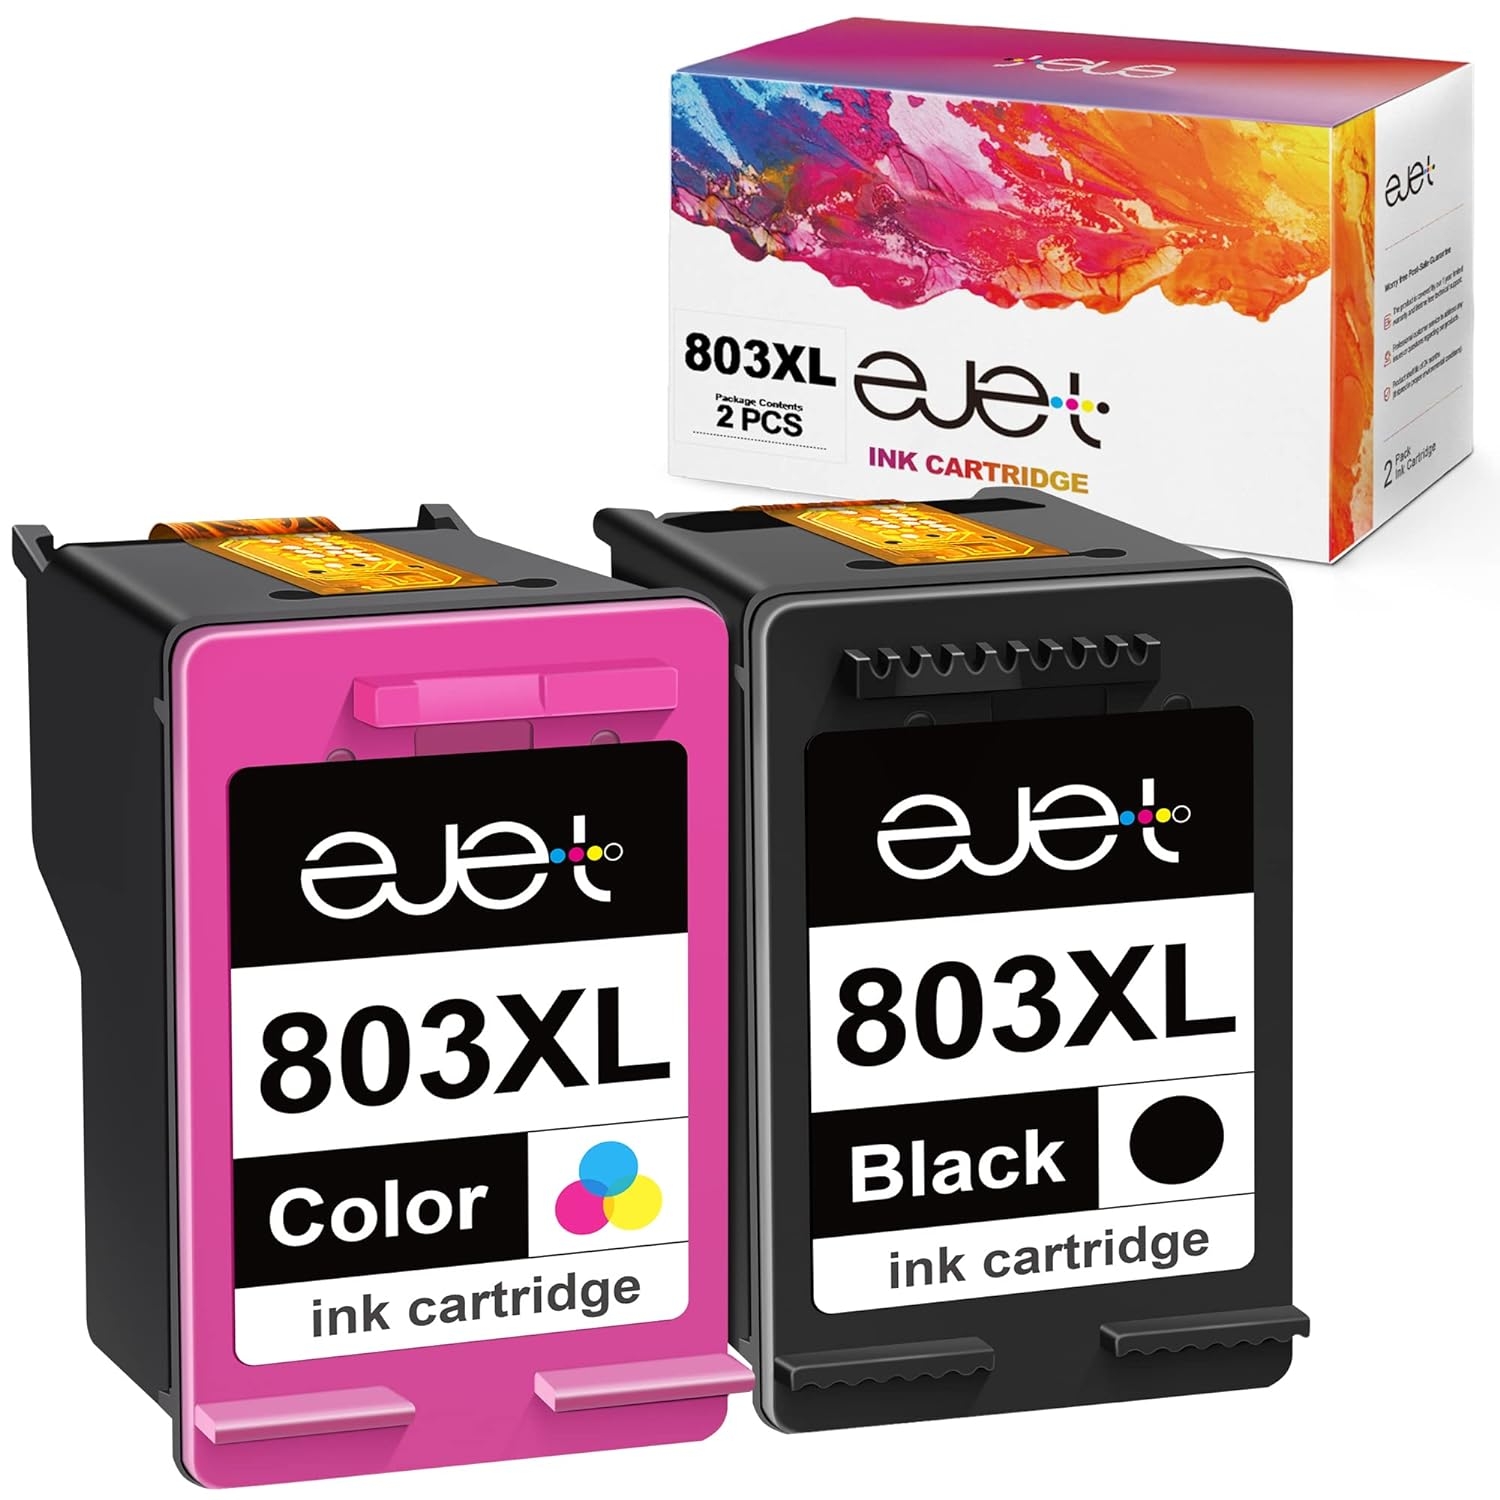 803XL Ink Cartridge (Black & tricolor) for HP Deskjet Printer 2132, 2131, 2623, 2622, 2621, 1112, 1111, 120, 125